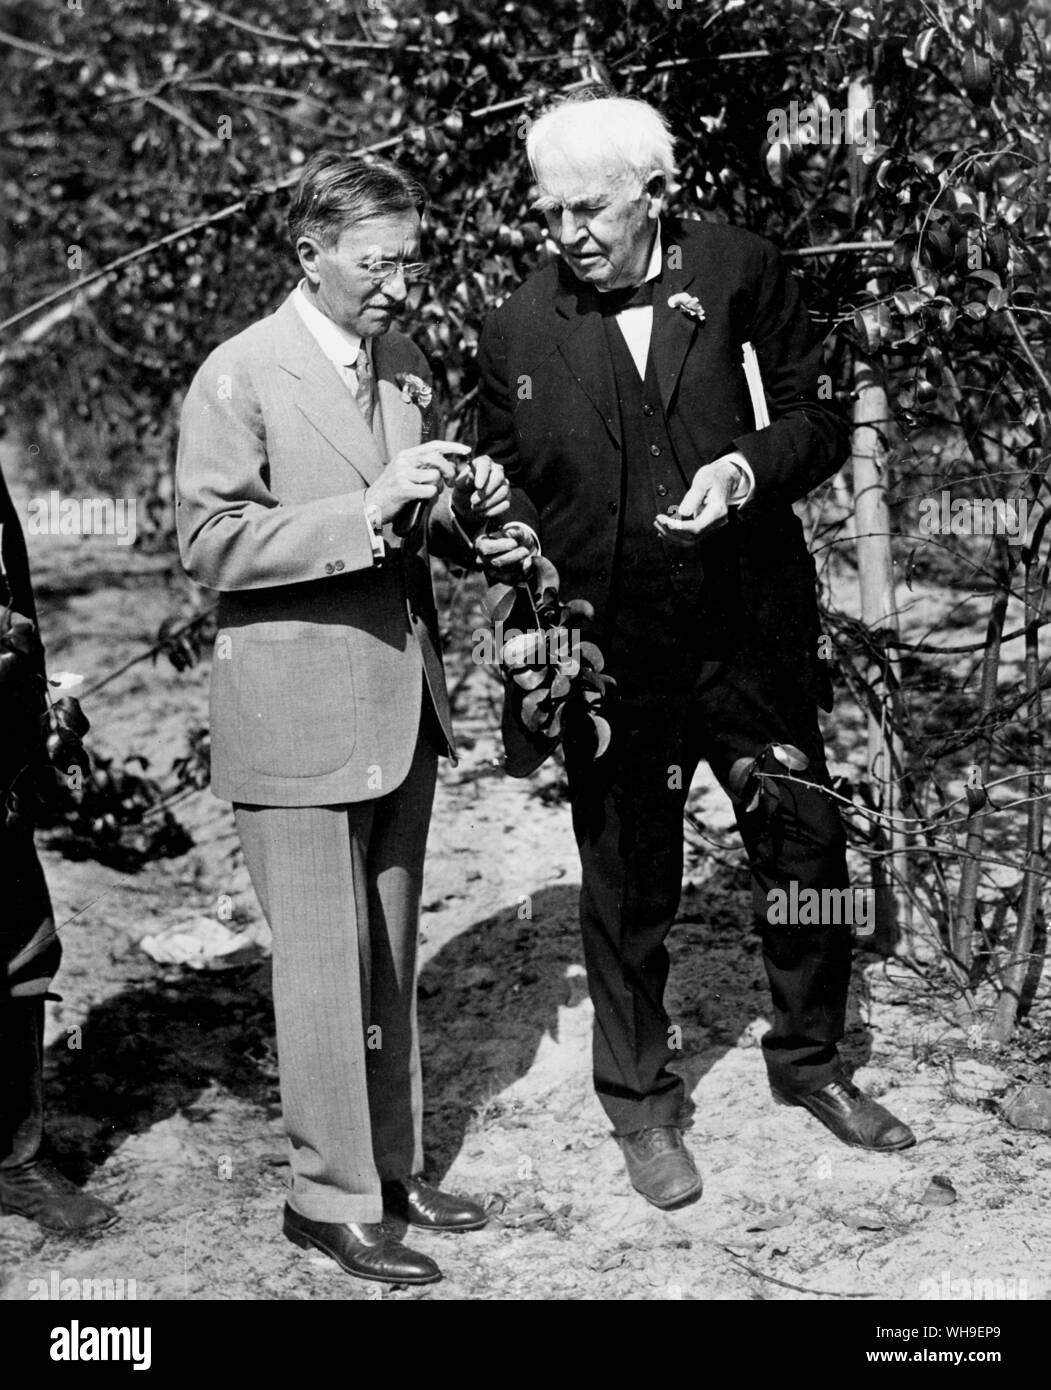 11 février 1928 : 81e anniversaire d'entre nous, un scientifique Thomas Edison (1847-1931) (à droite) avec M. Harvey Firestone S dans les jardins botaniques d'Edison à Fort Myers, Floride, USA. Banque D'Images